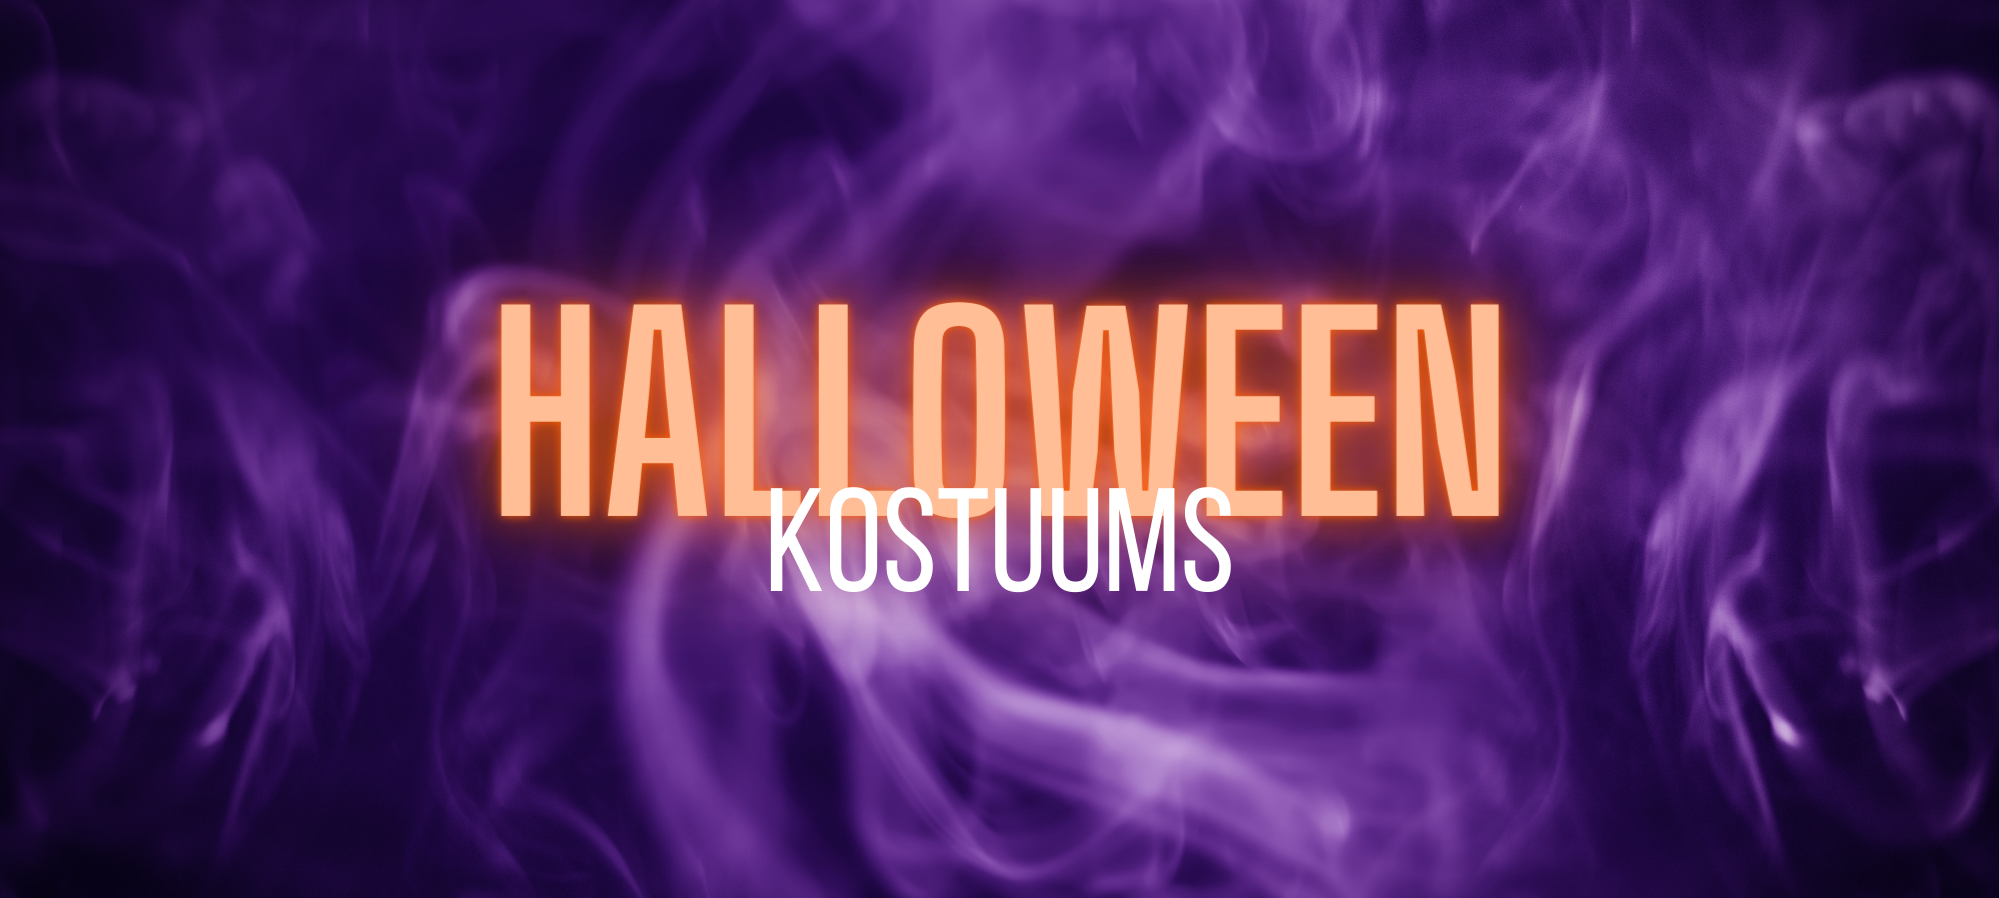 Halloween kostuums: bloederige bruiden, psycho clowns, enge duivels en meer!